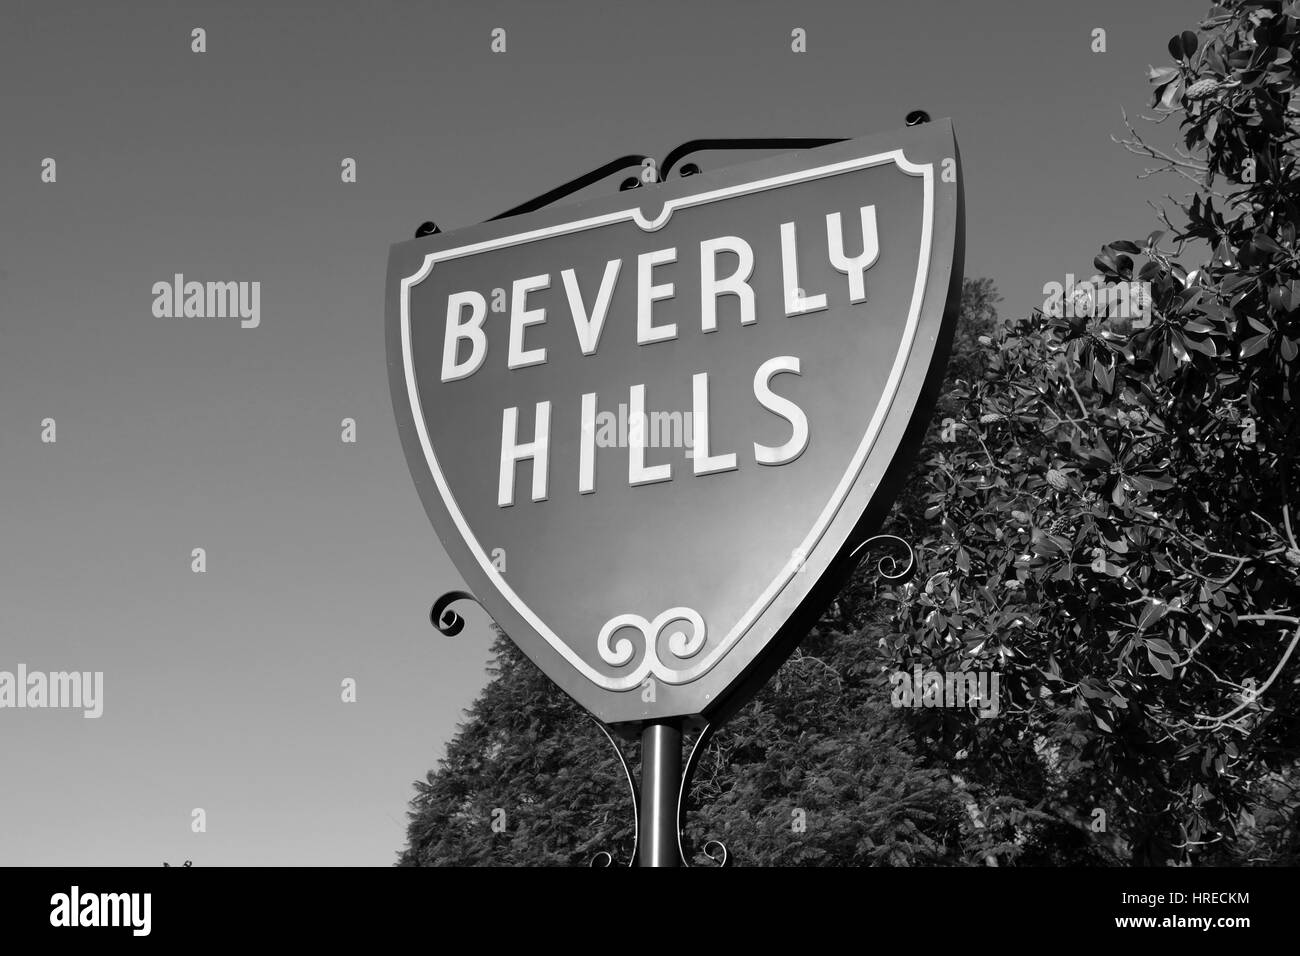 Beverly Hills, California, EE.UU. - Septiembre 4, 2010: el famoso escudo Beverly Hills firmar en blanco y negro Foto de stock